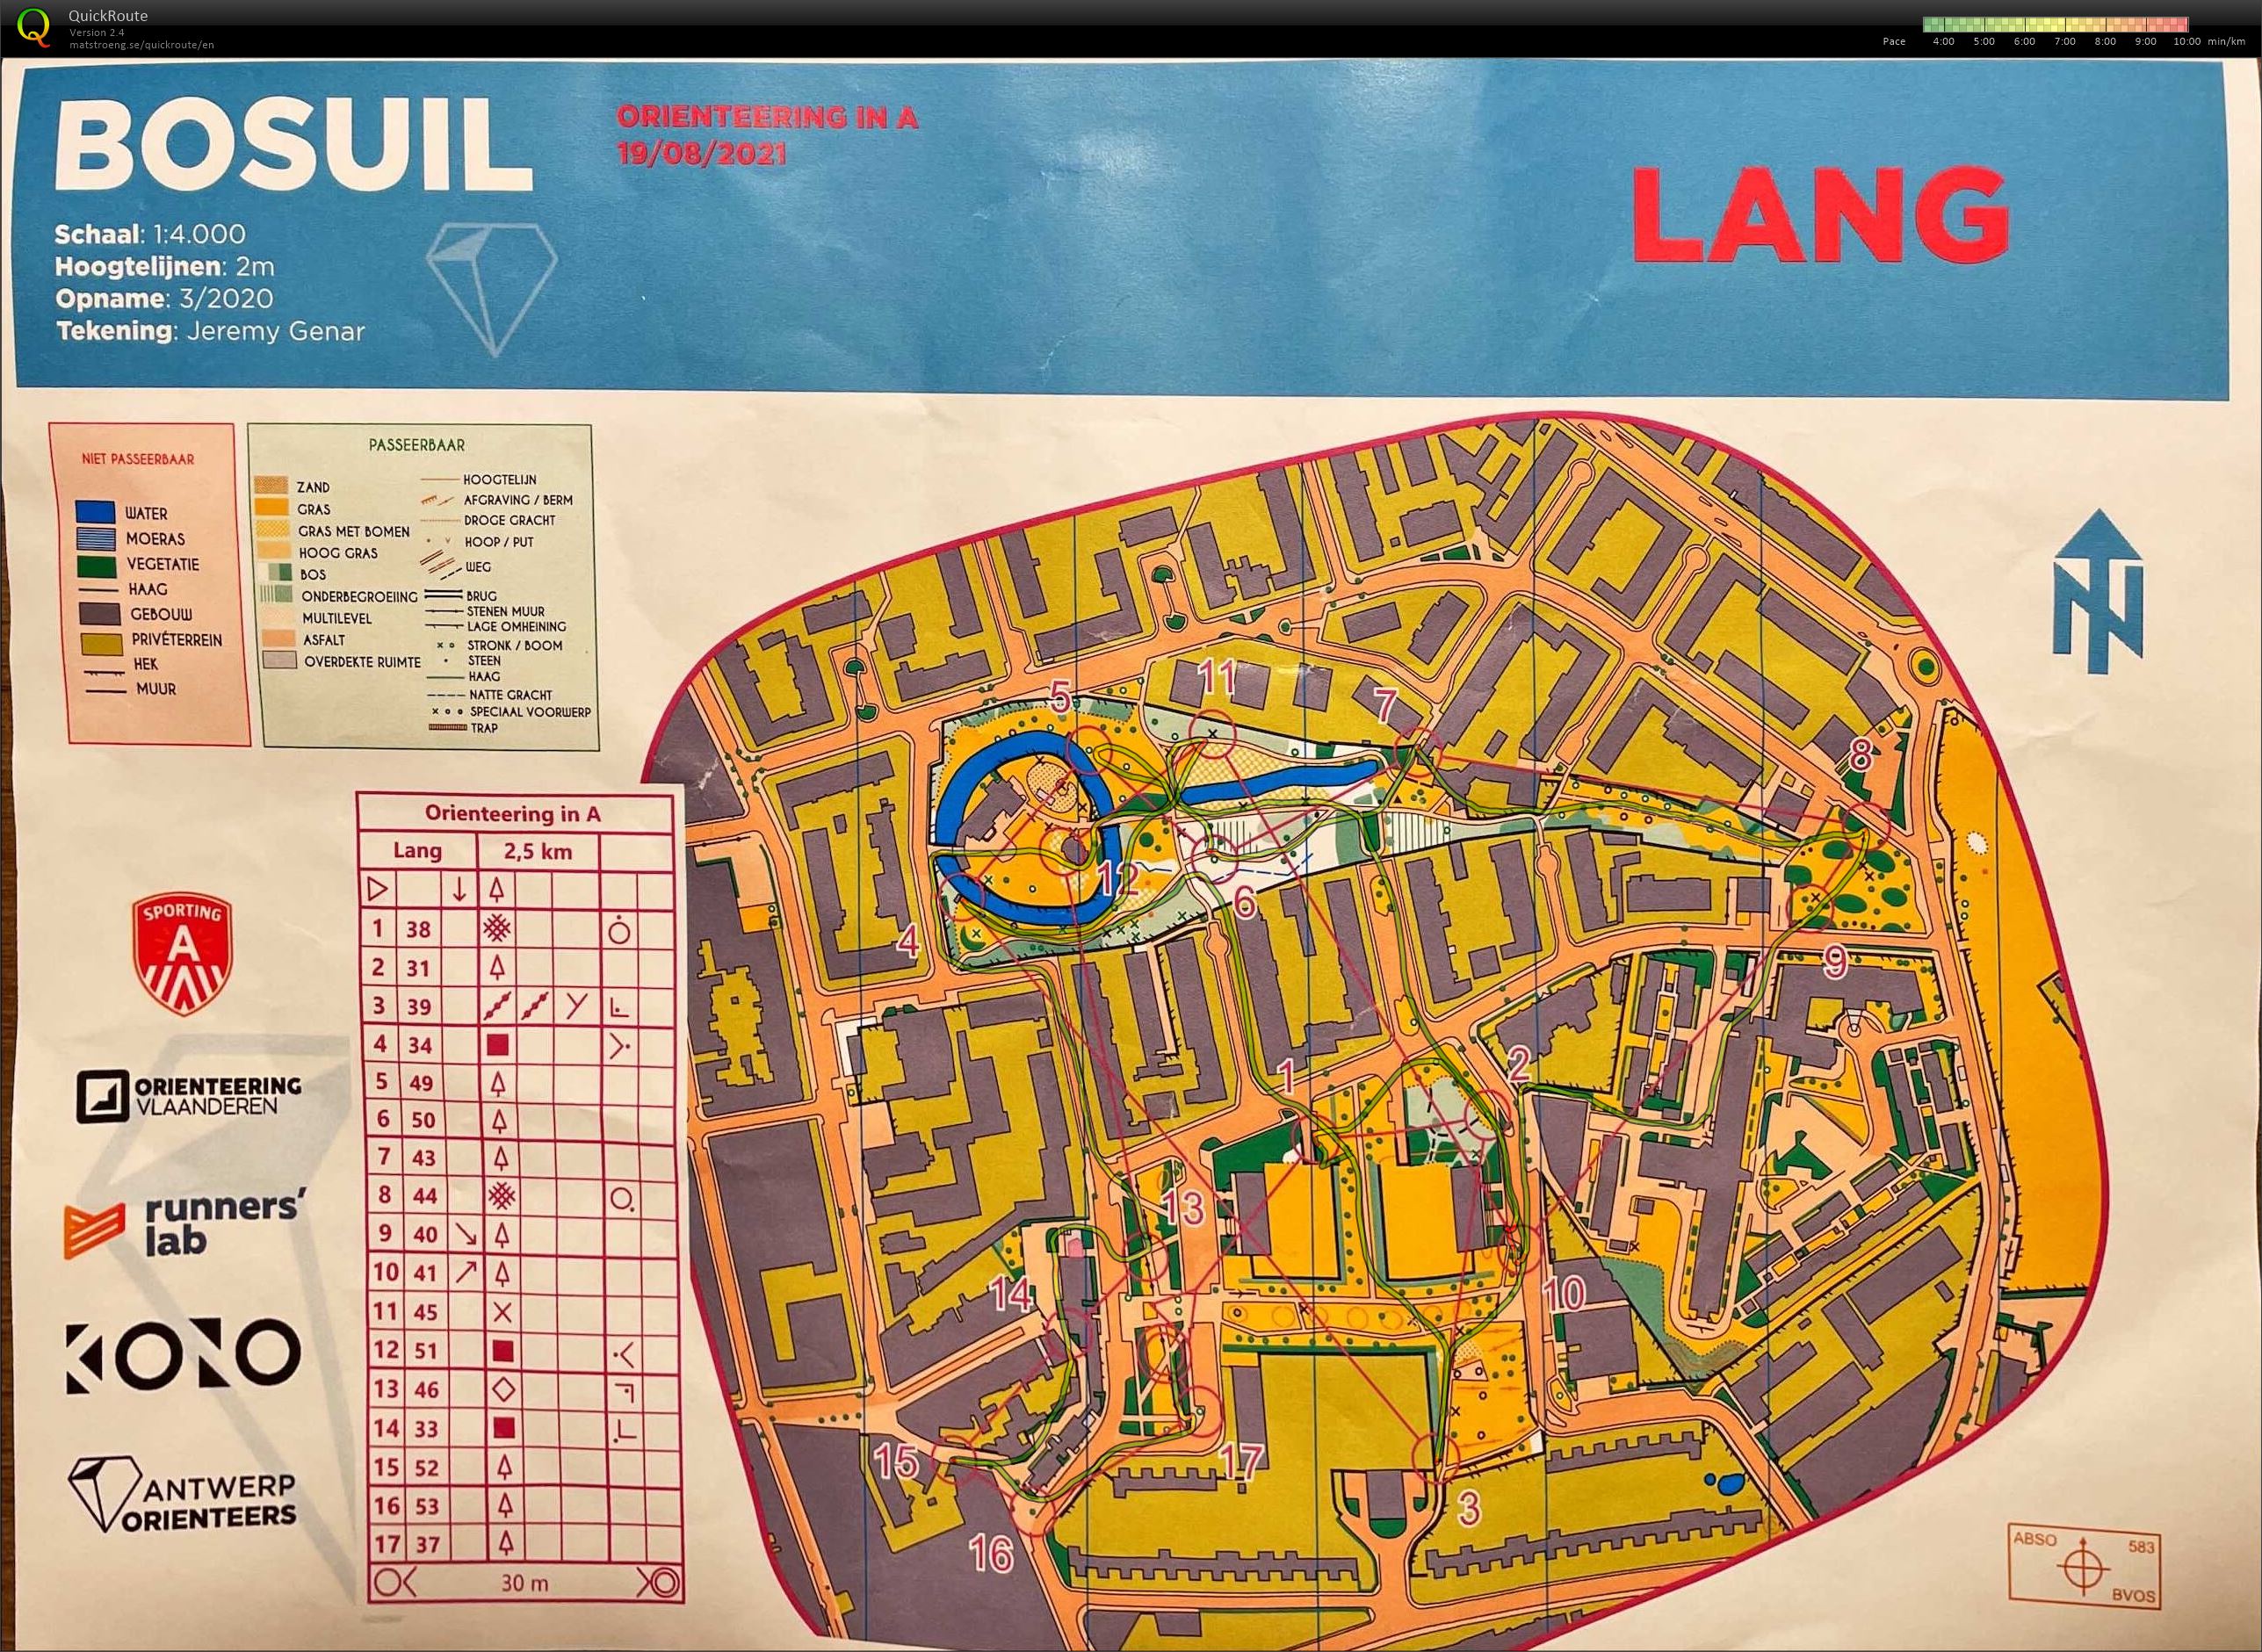 Orienteering in A - Bosuil - Lang (19/08/2021)